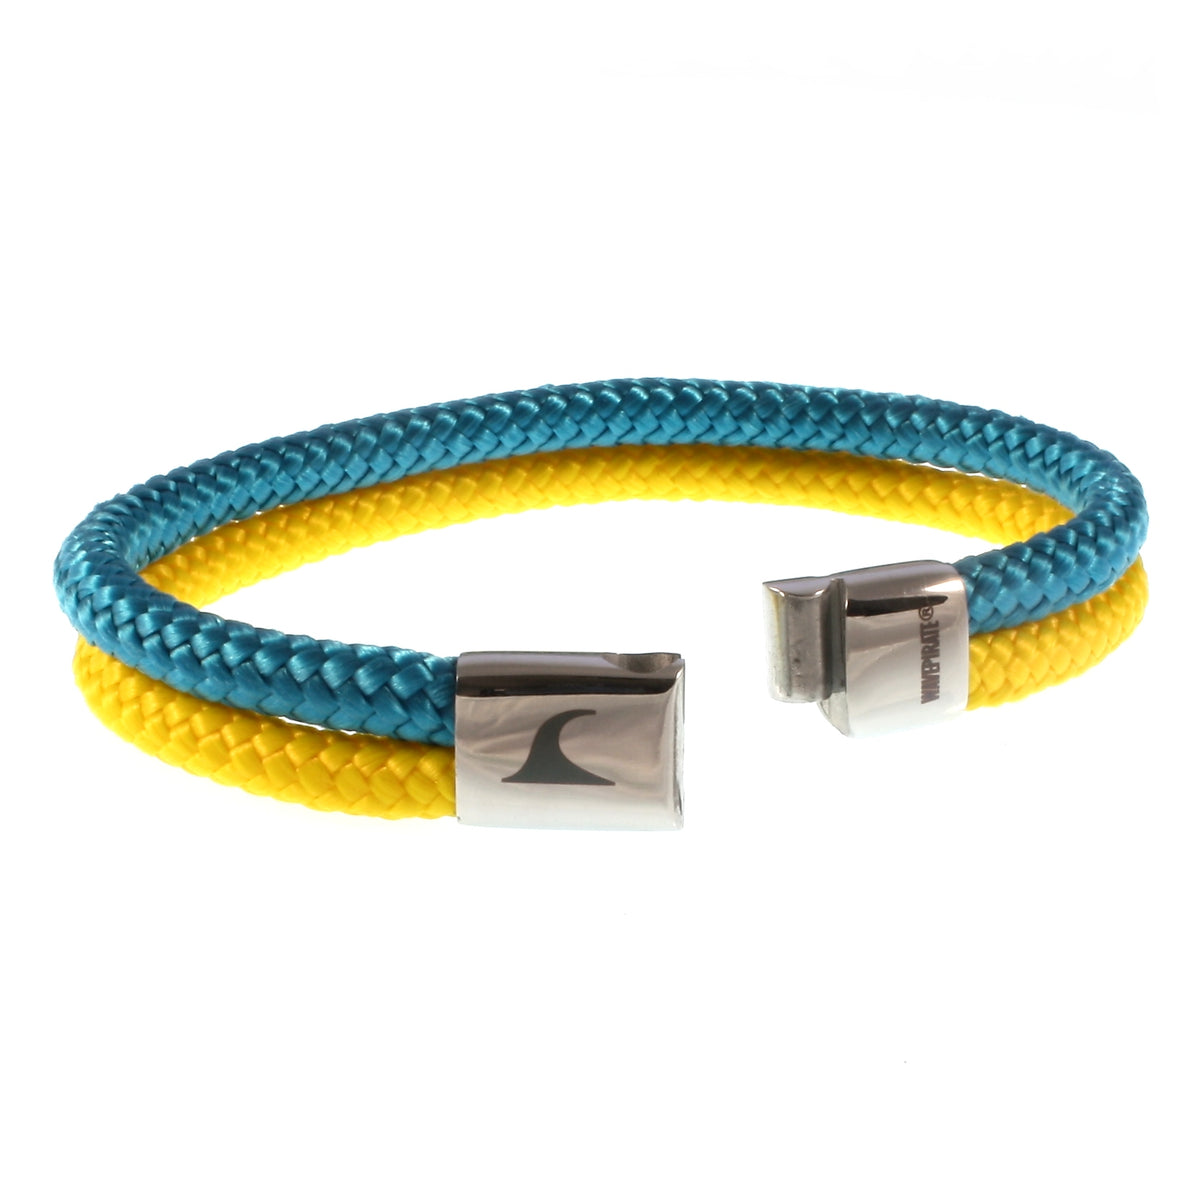 Herren-Segeltau-Armband-Tarifa-blau-gelb-geflochten-Edelstahlverschluss-offen-wavepirate-shop-st